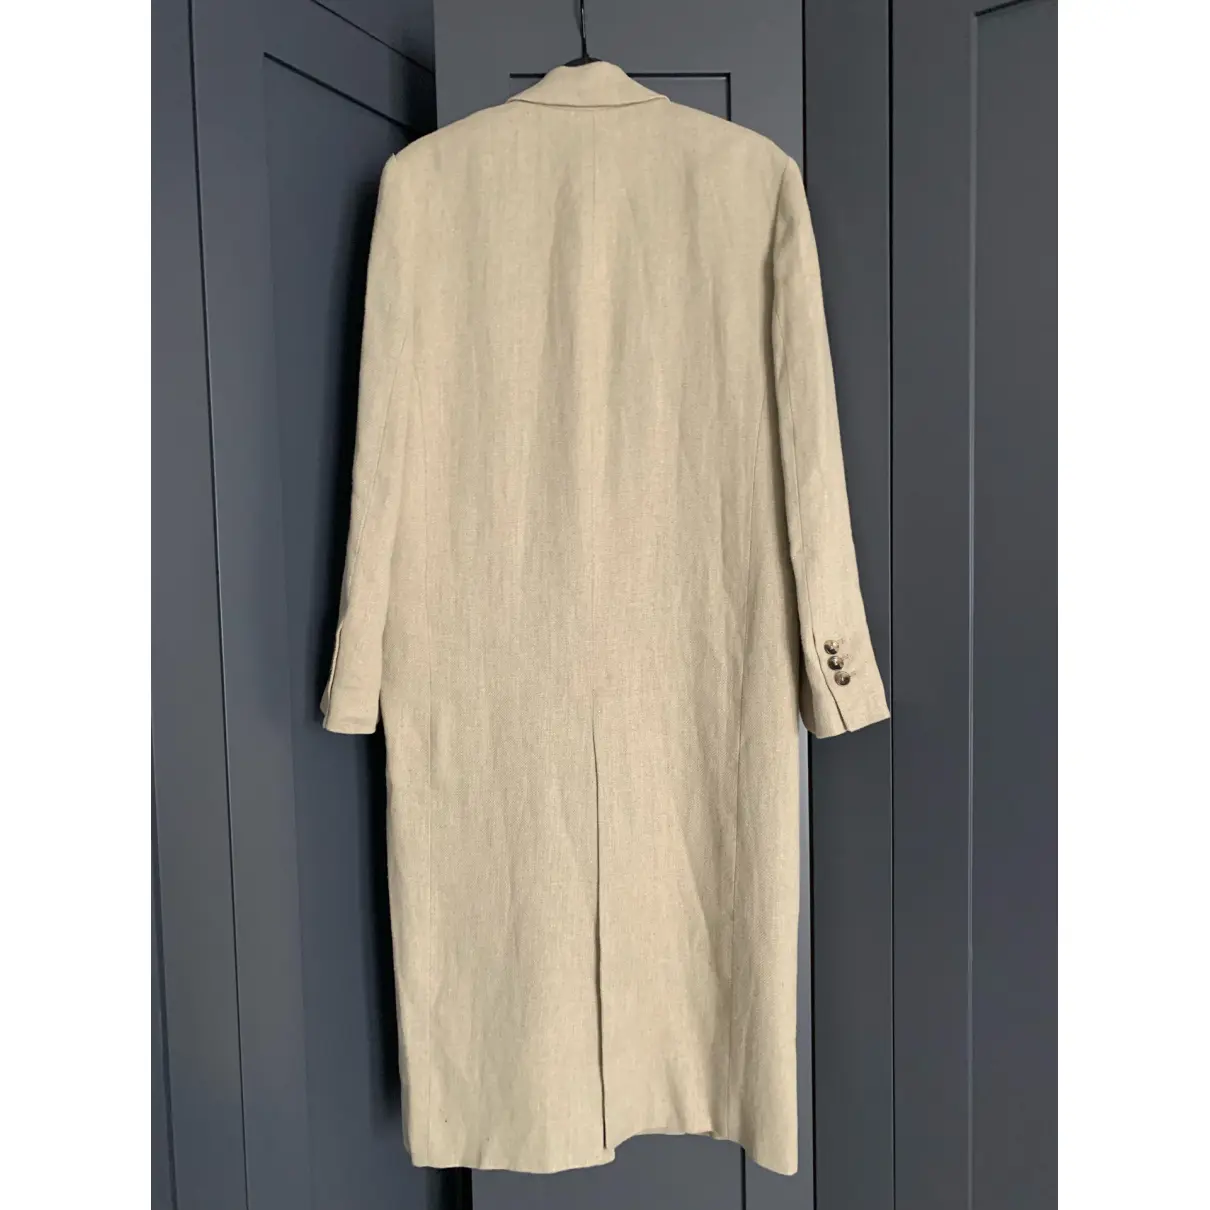 Buy Zara Linen coat online